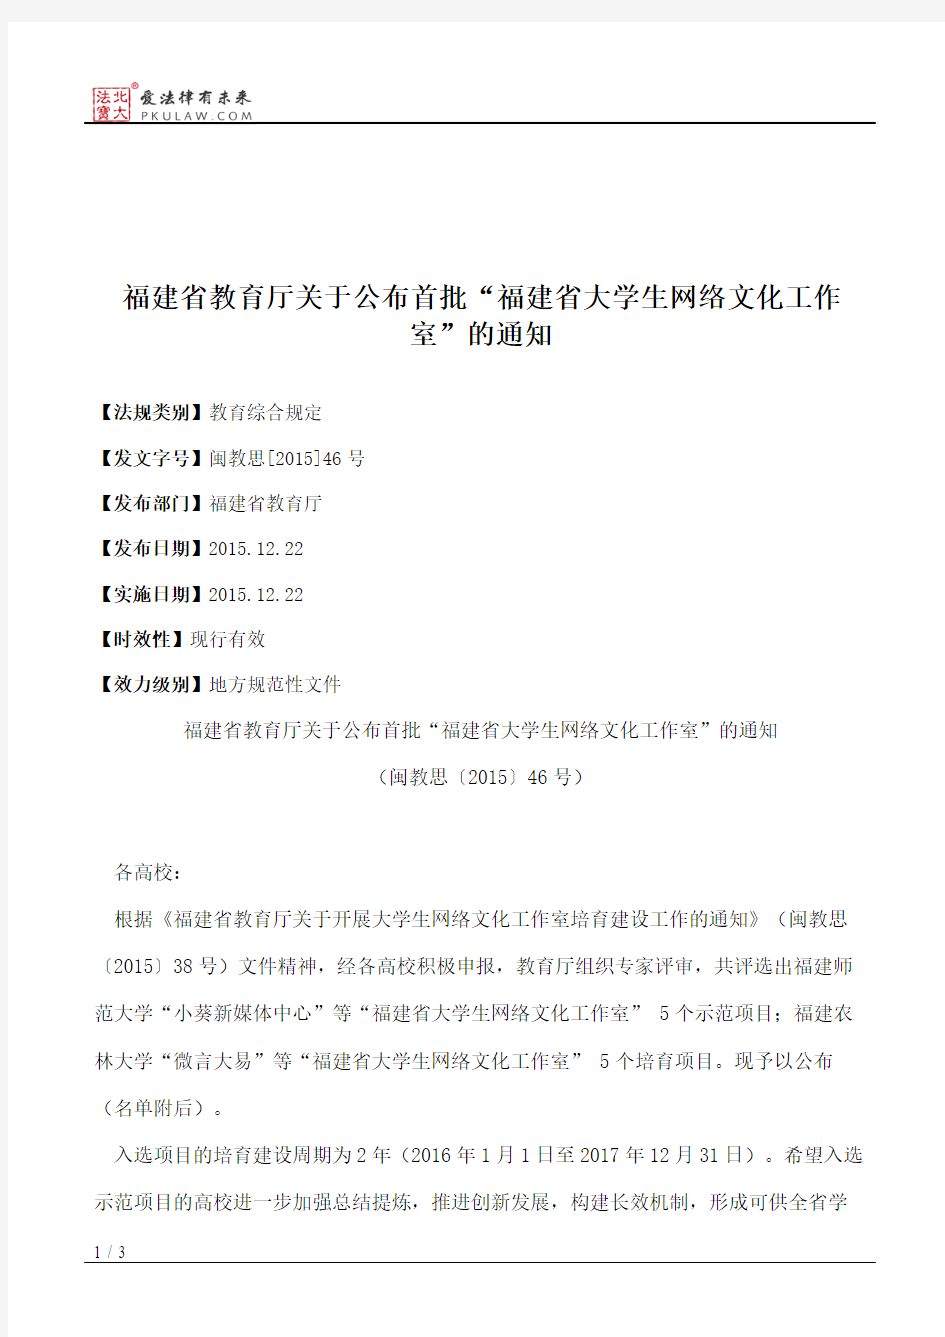 福建省教育厅关于公布首批“福建省大学生网络文化工作室”的通知